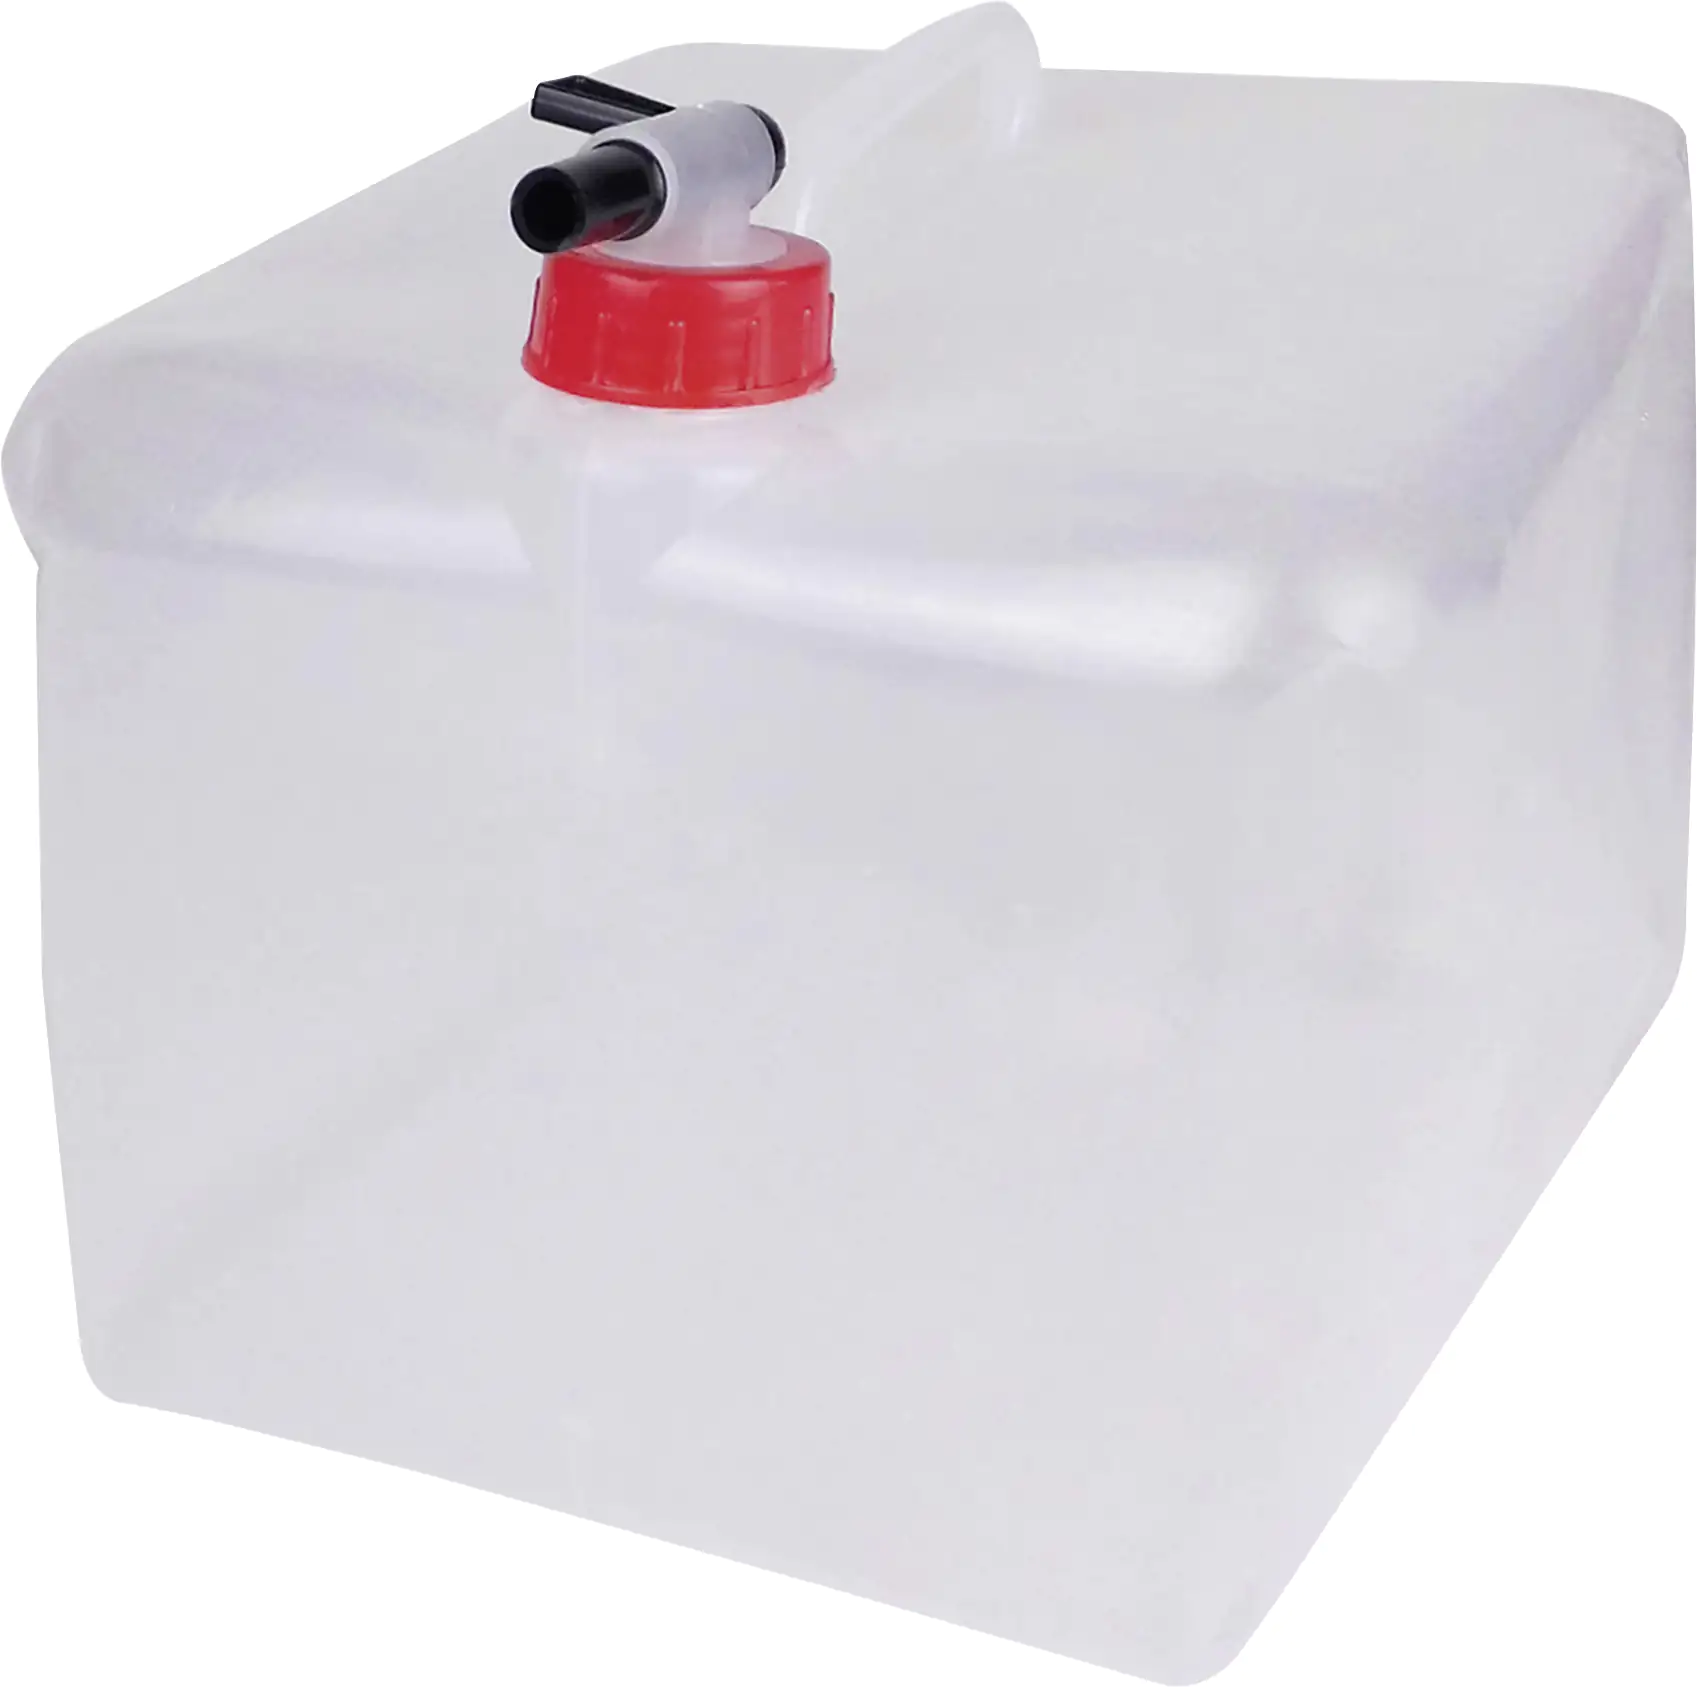 Faltbarer Wasserkanister mit Zapfhahn, 10 Liter